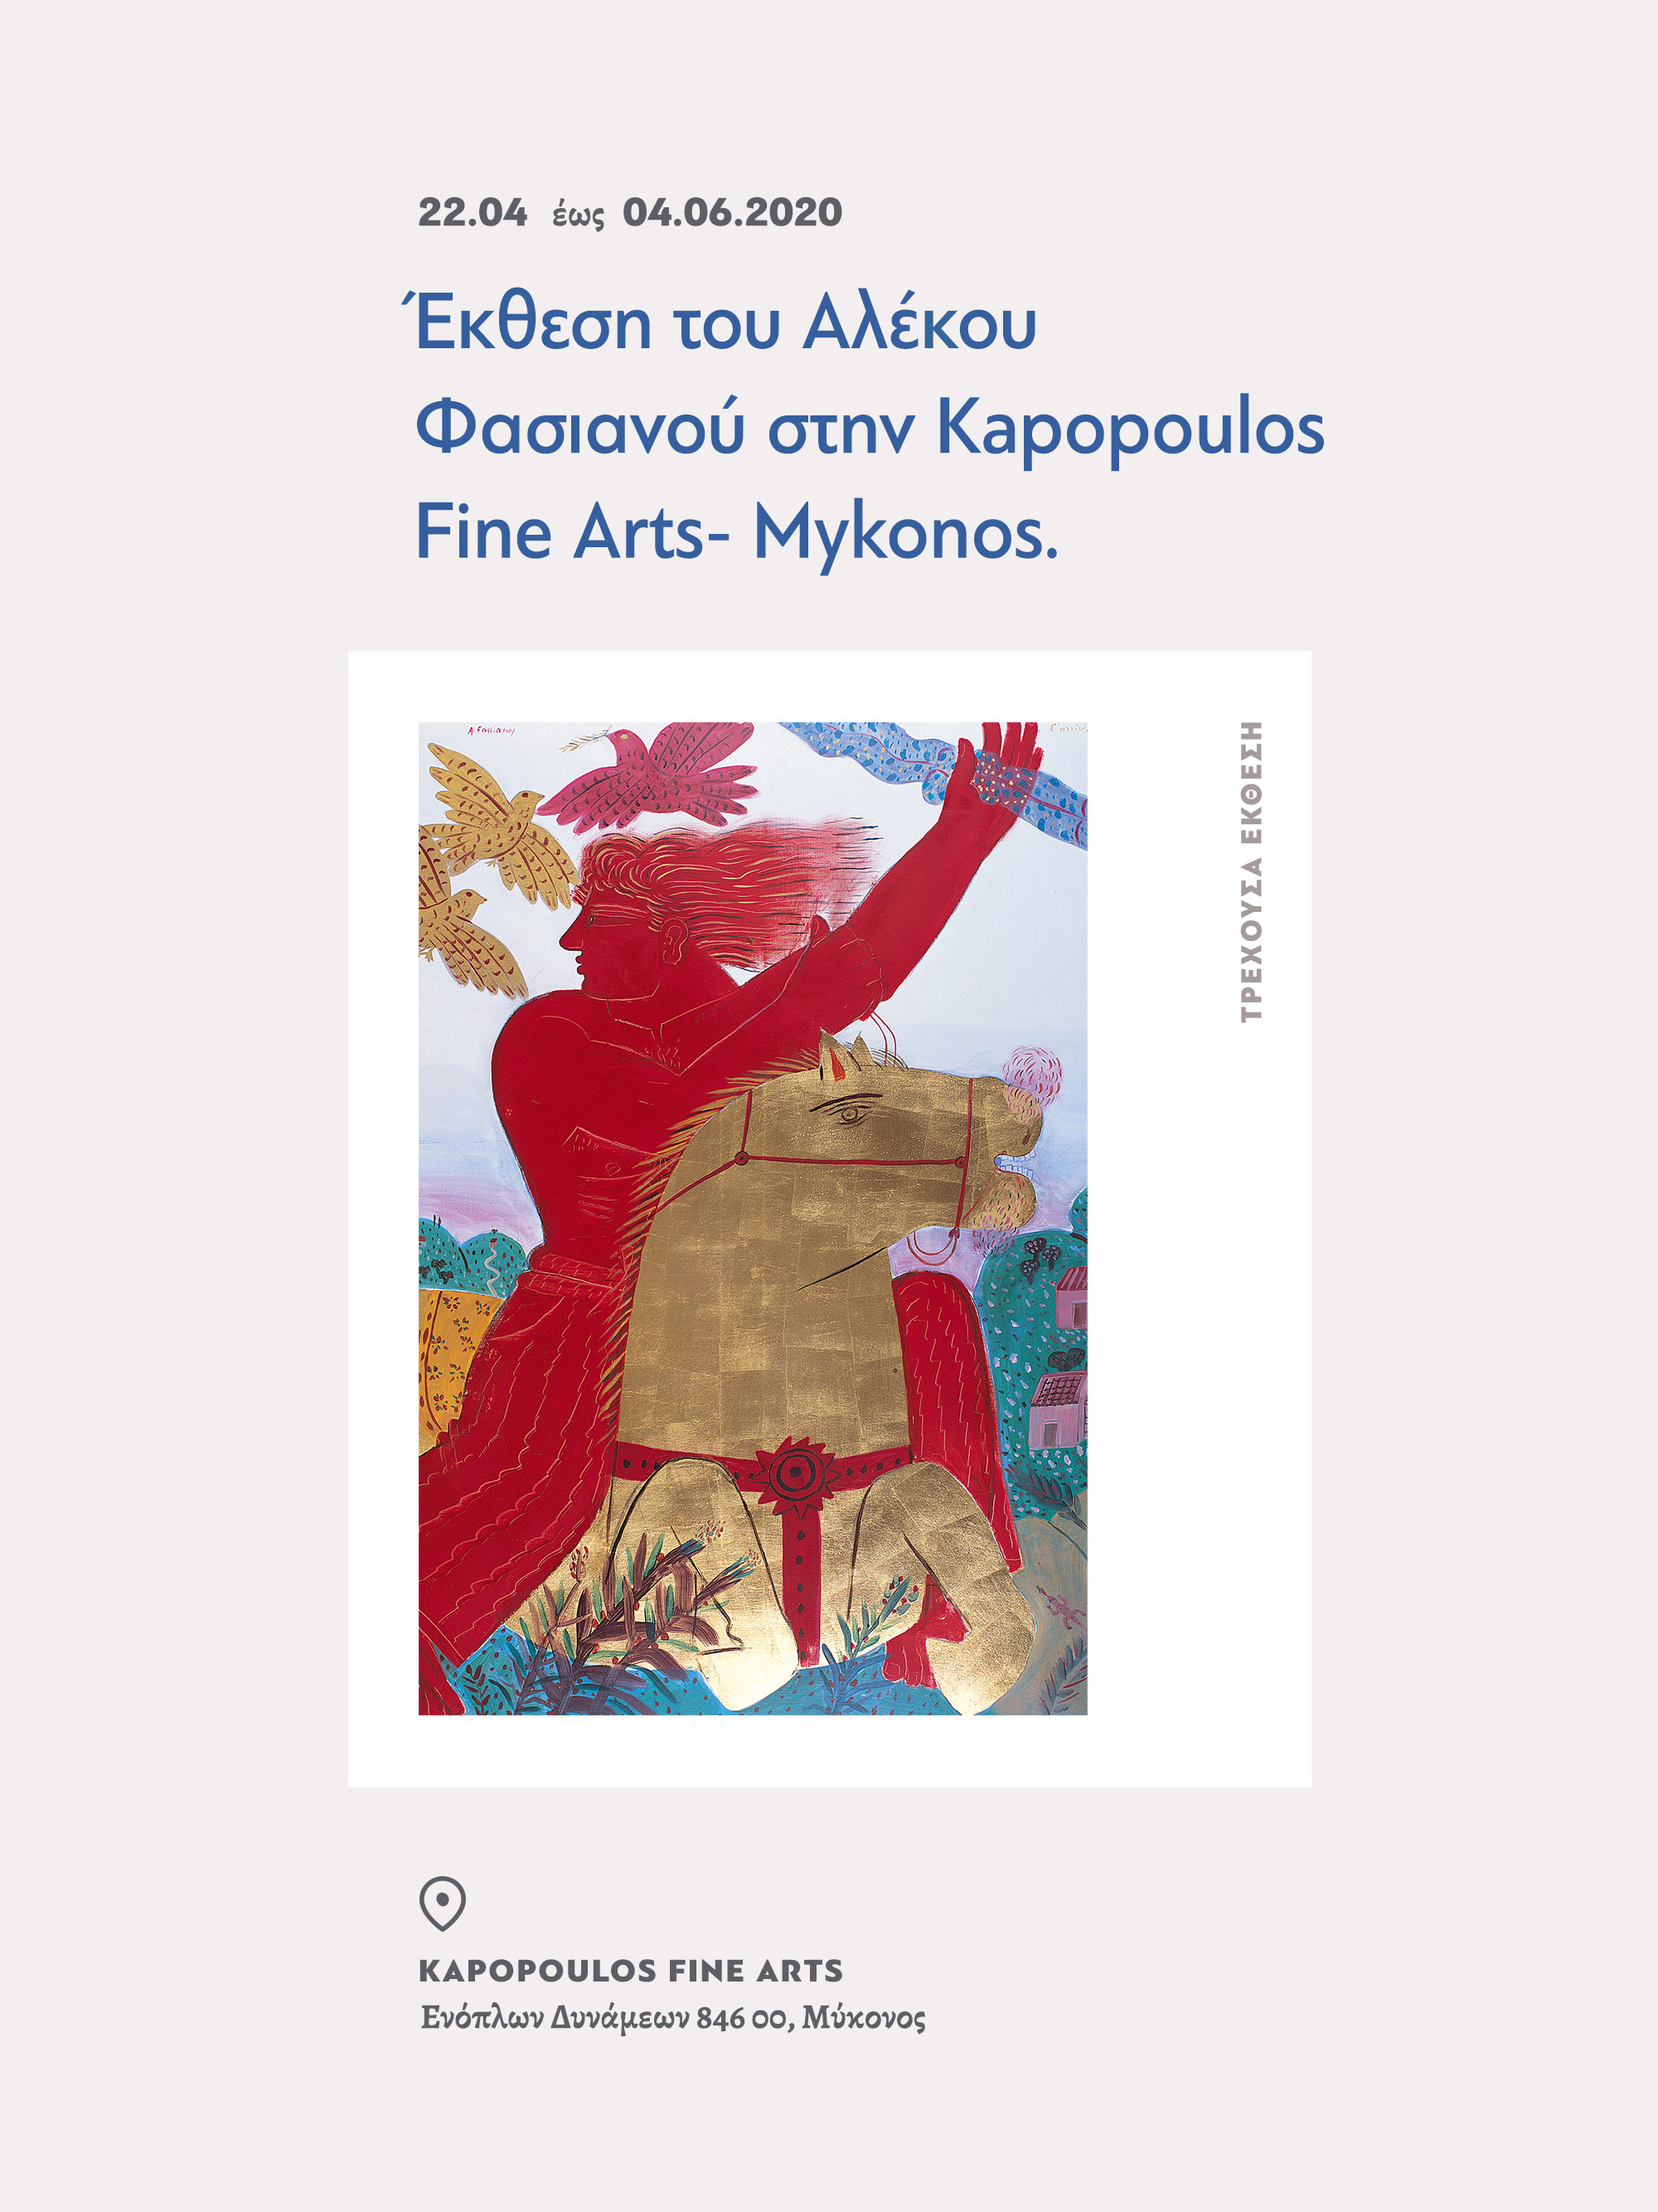 alekos fassianos website design exhibition kommigraphics